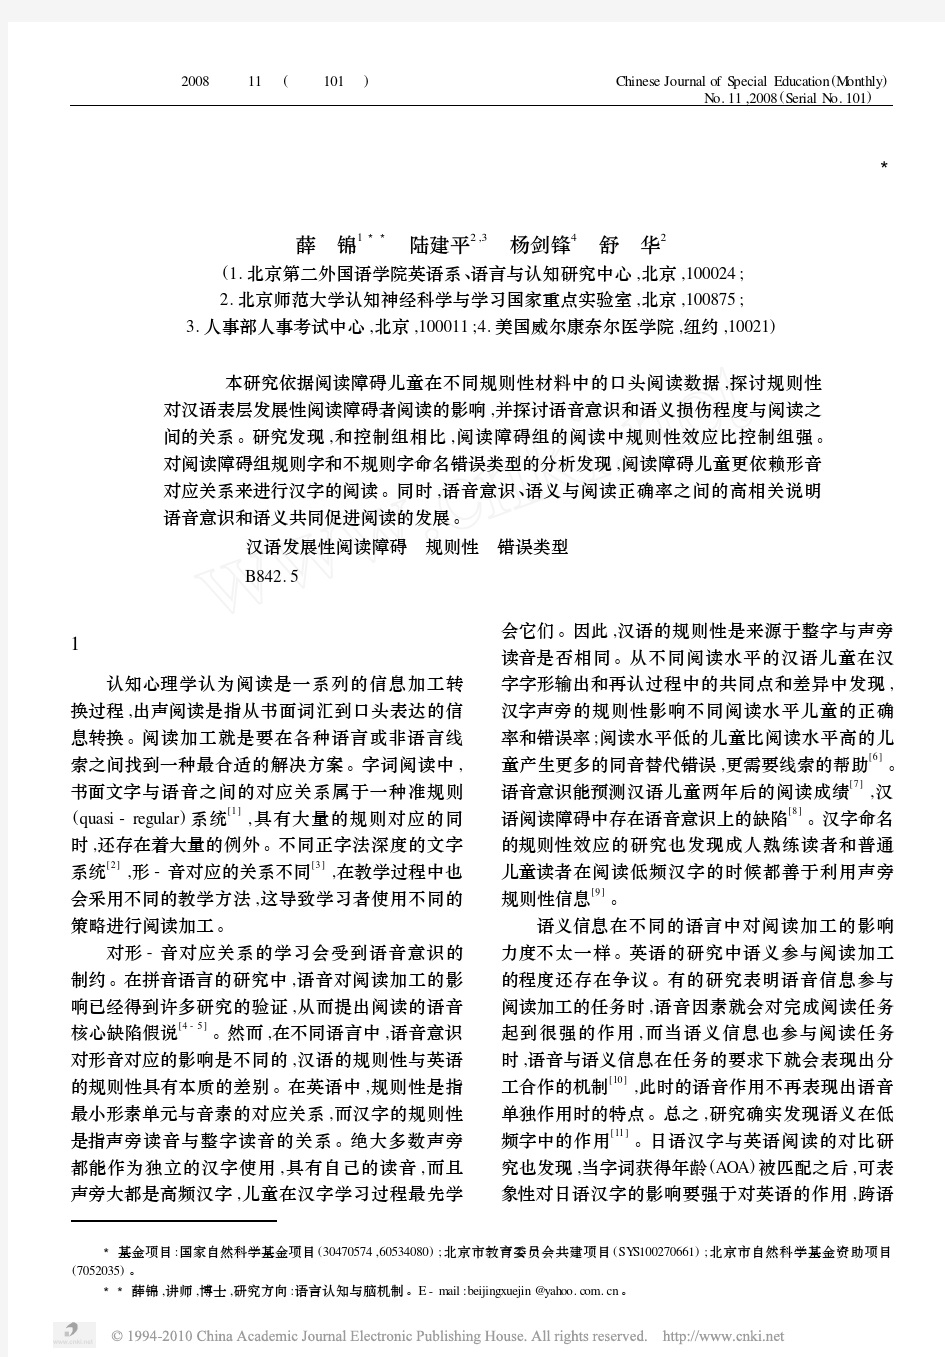 规则性_语音意识_语义对汉语阅读障碍者阅读的影响_薛锦